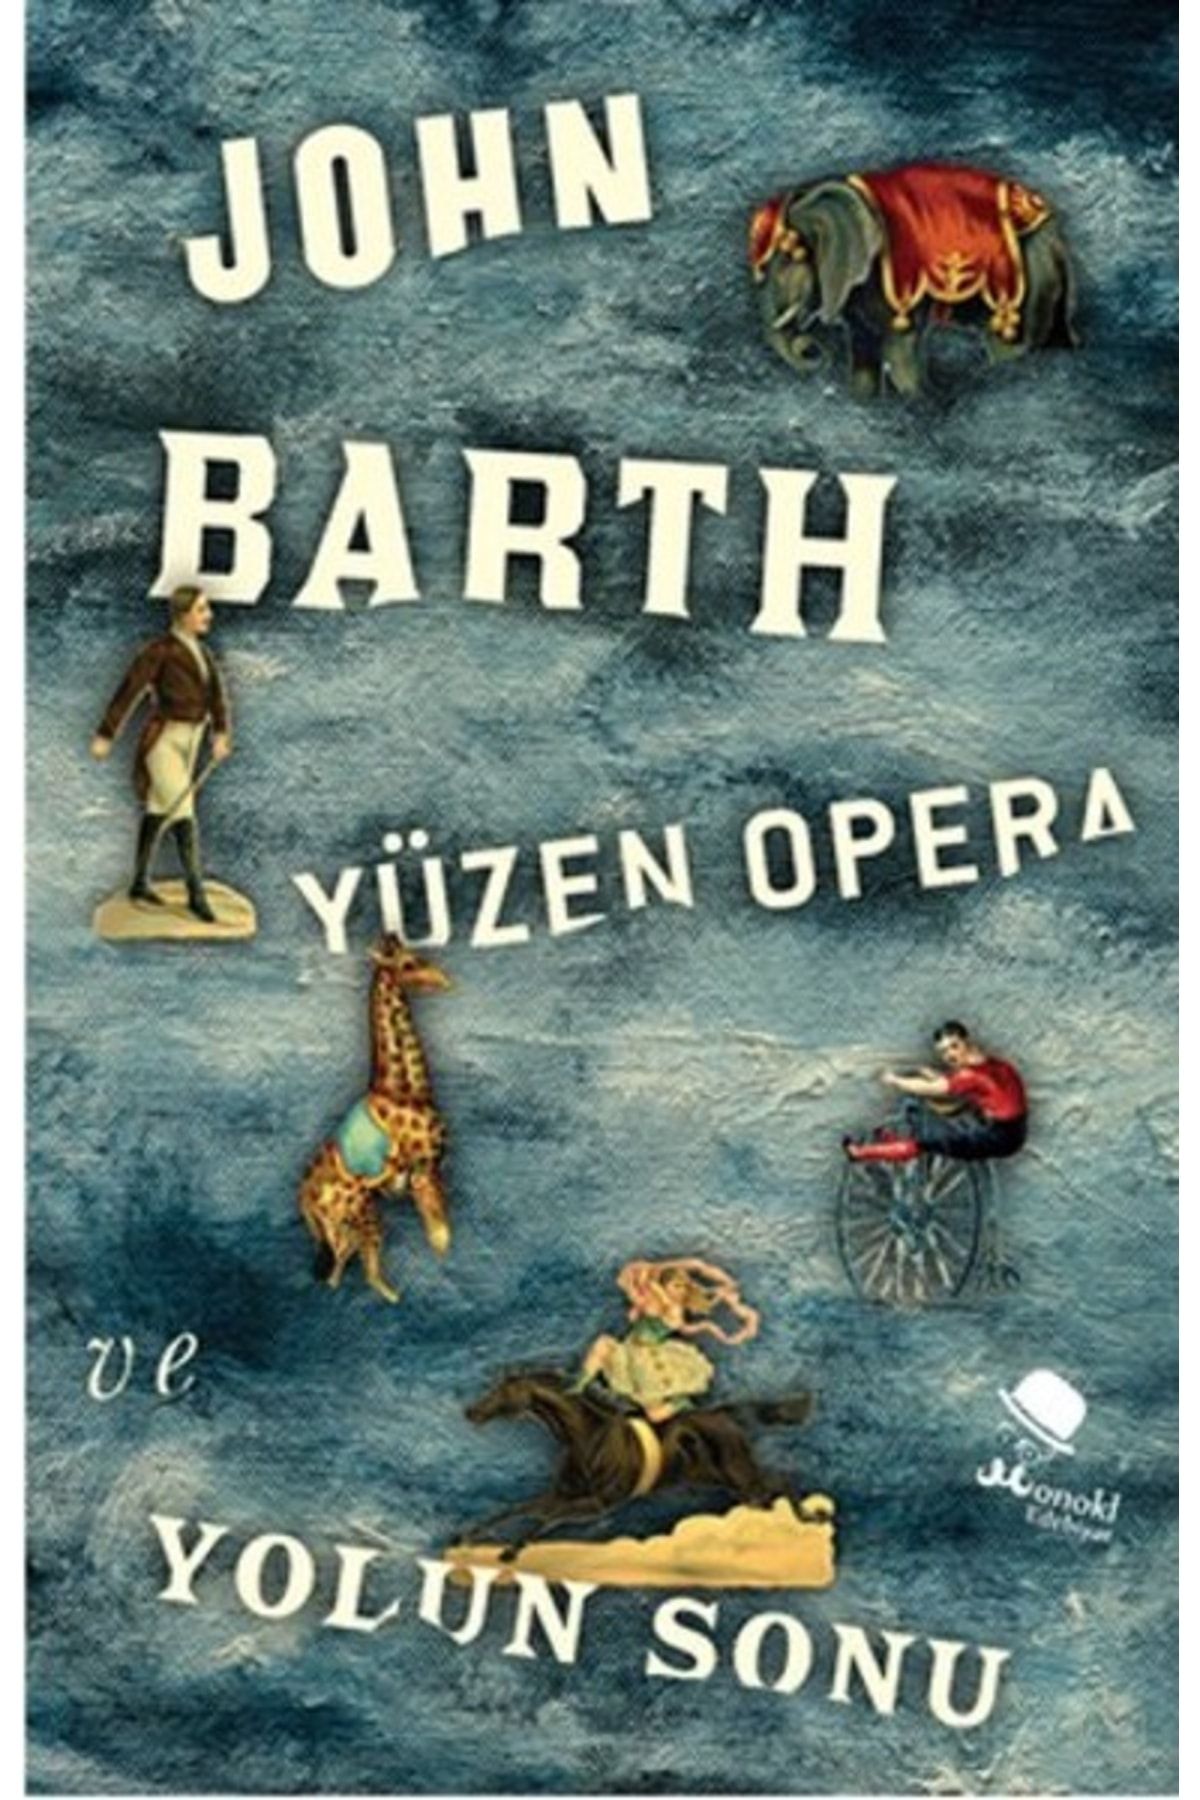 monokl Yüzen Opera Ve Yolun Sonu - - John Barth Kitabı